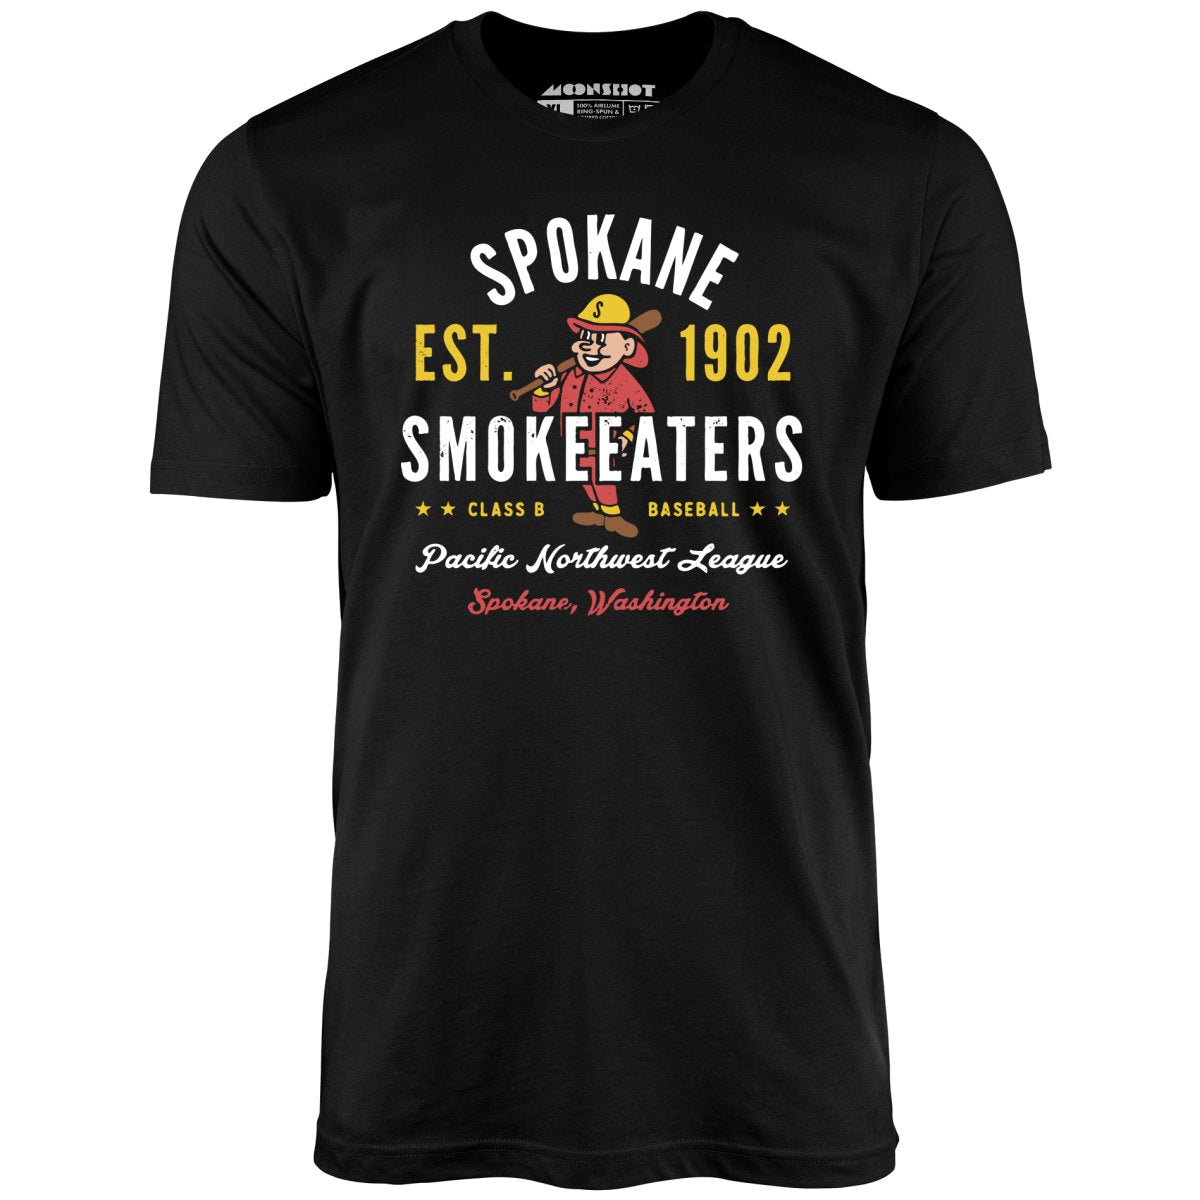 Spokane Smoke Eaters - Washington - Vintage Defunct Baseball Teams - Unisex T-Shirt